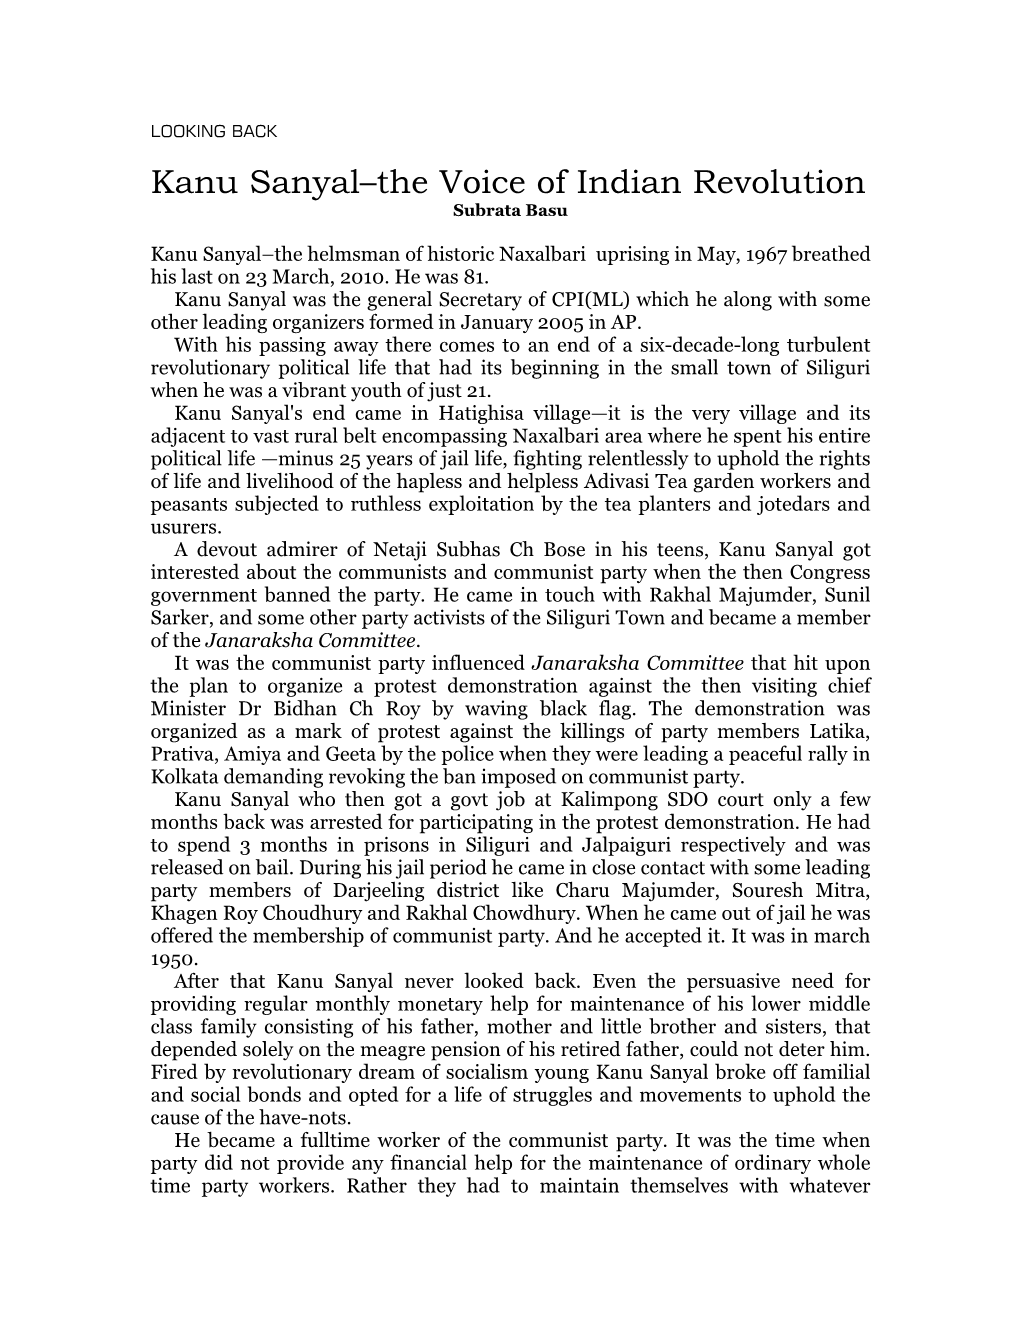 Kanu Sanyal–The Voice of Indian Revolution Subrata Basu